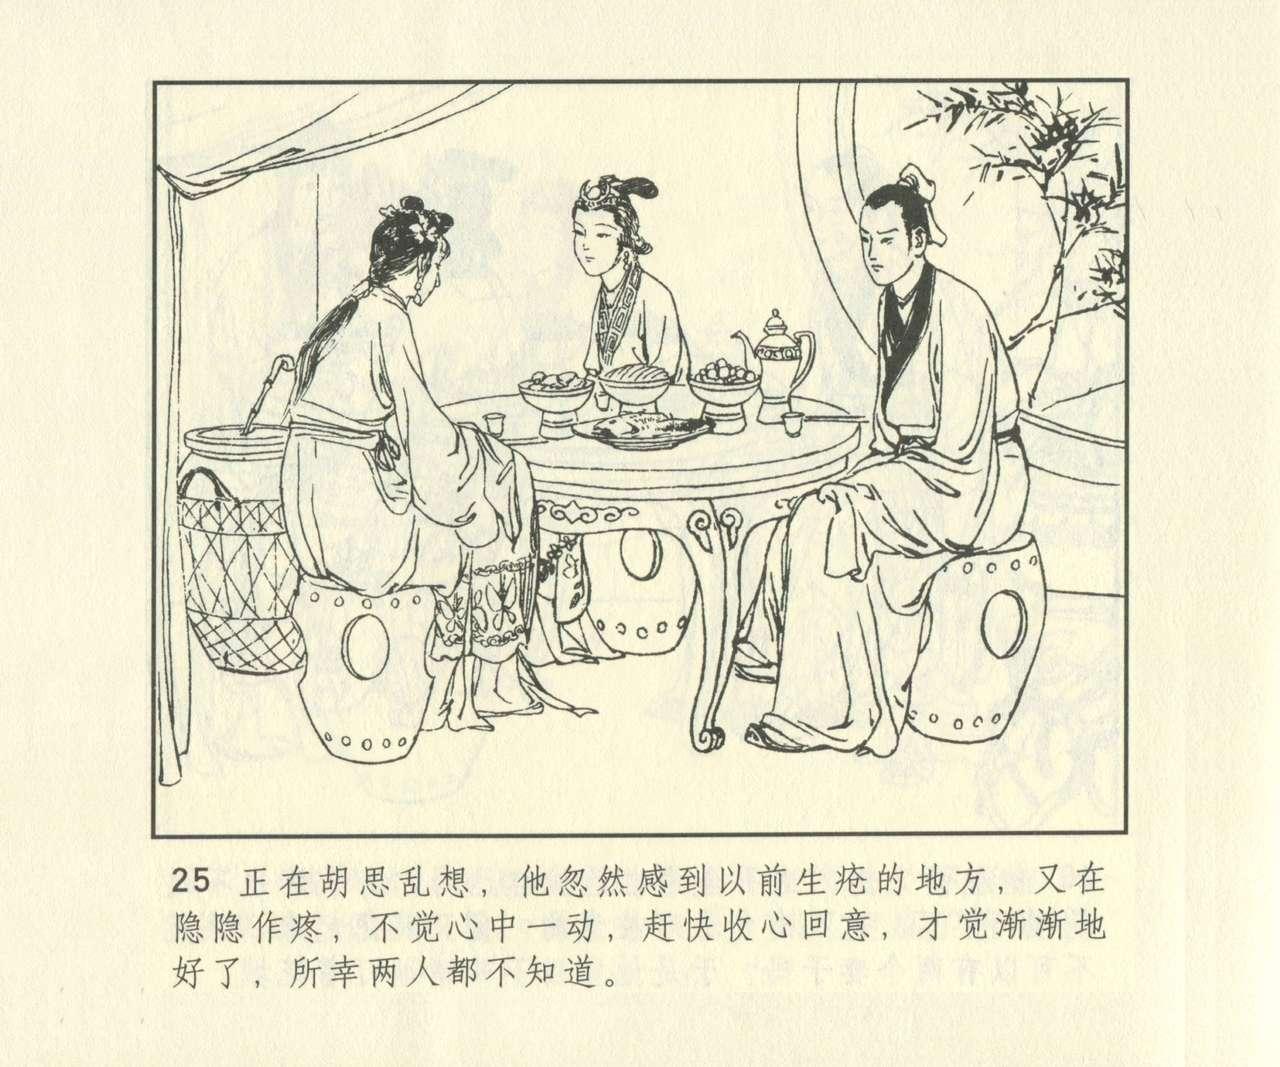 聊斋志异 张玮等绘 天津人民美术出版社 卷二十一 ~ 三十 641